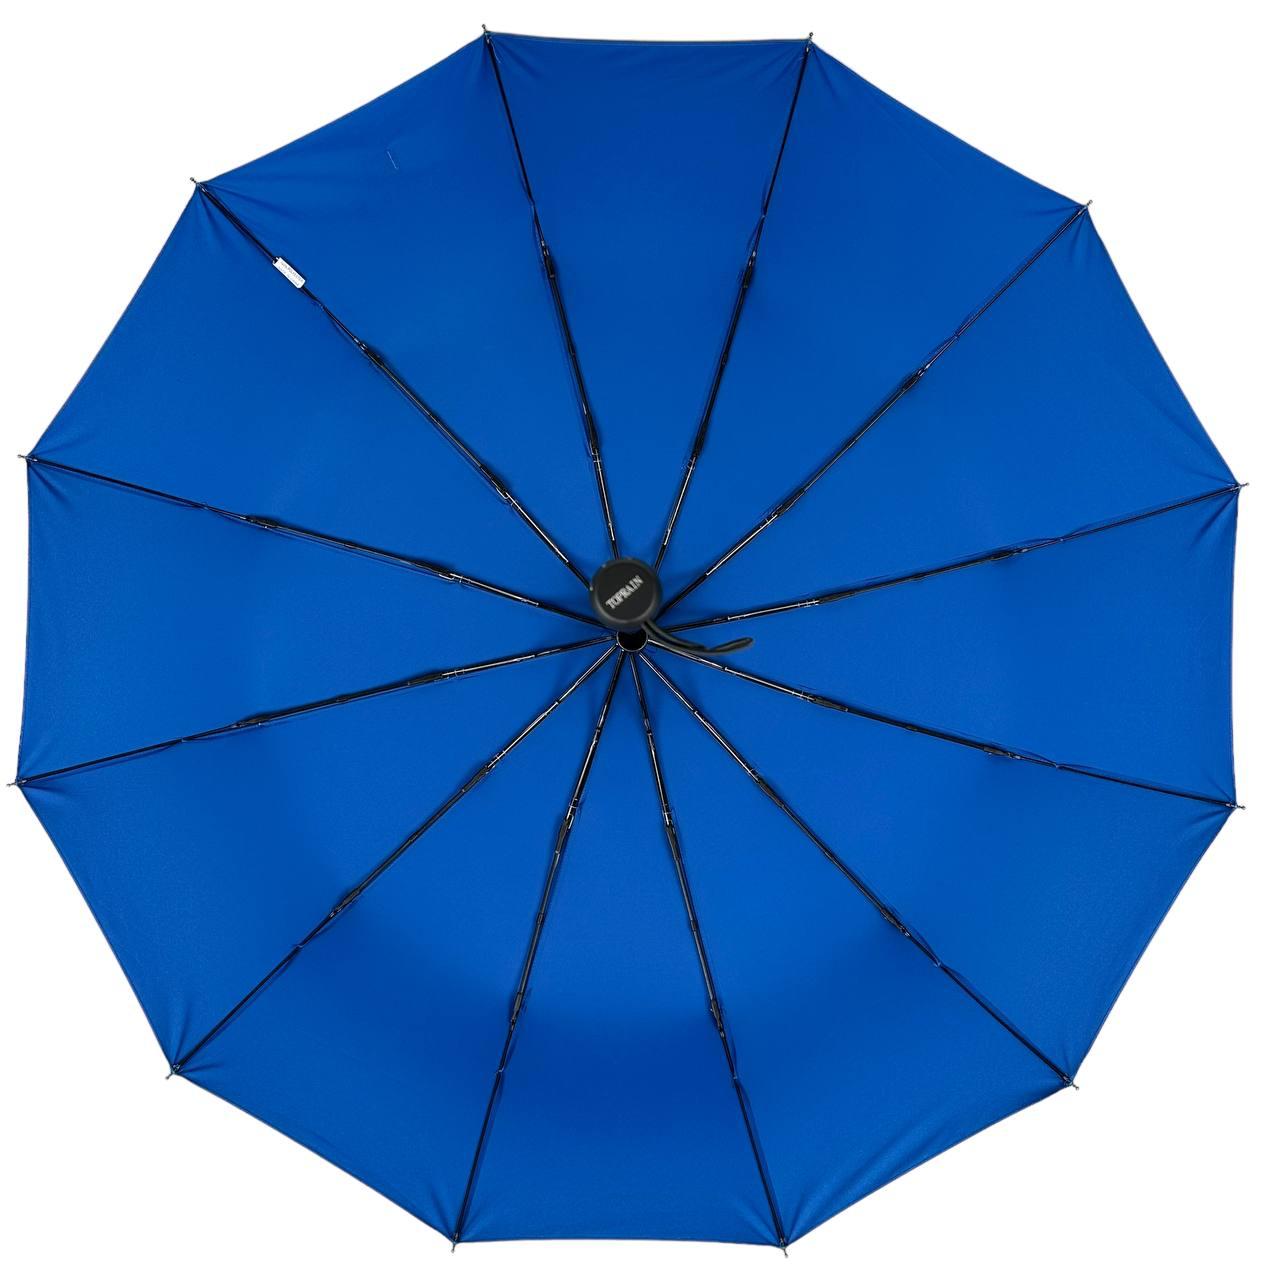 Складана парасолька повний автомат Toprain 105 см синя - фото 3